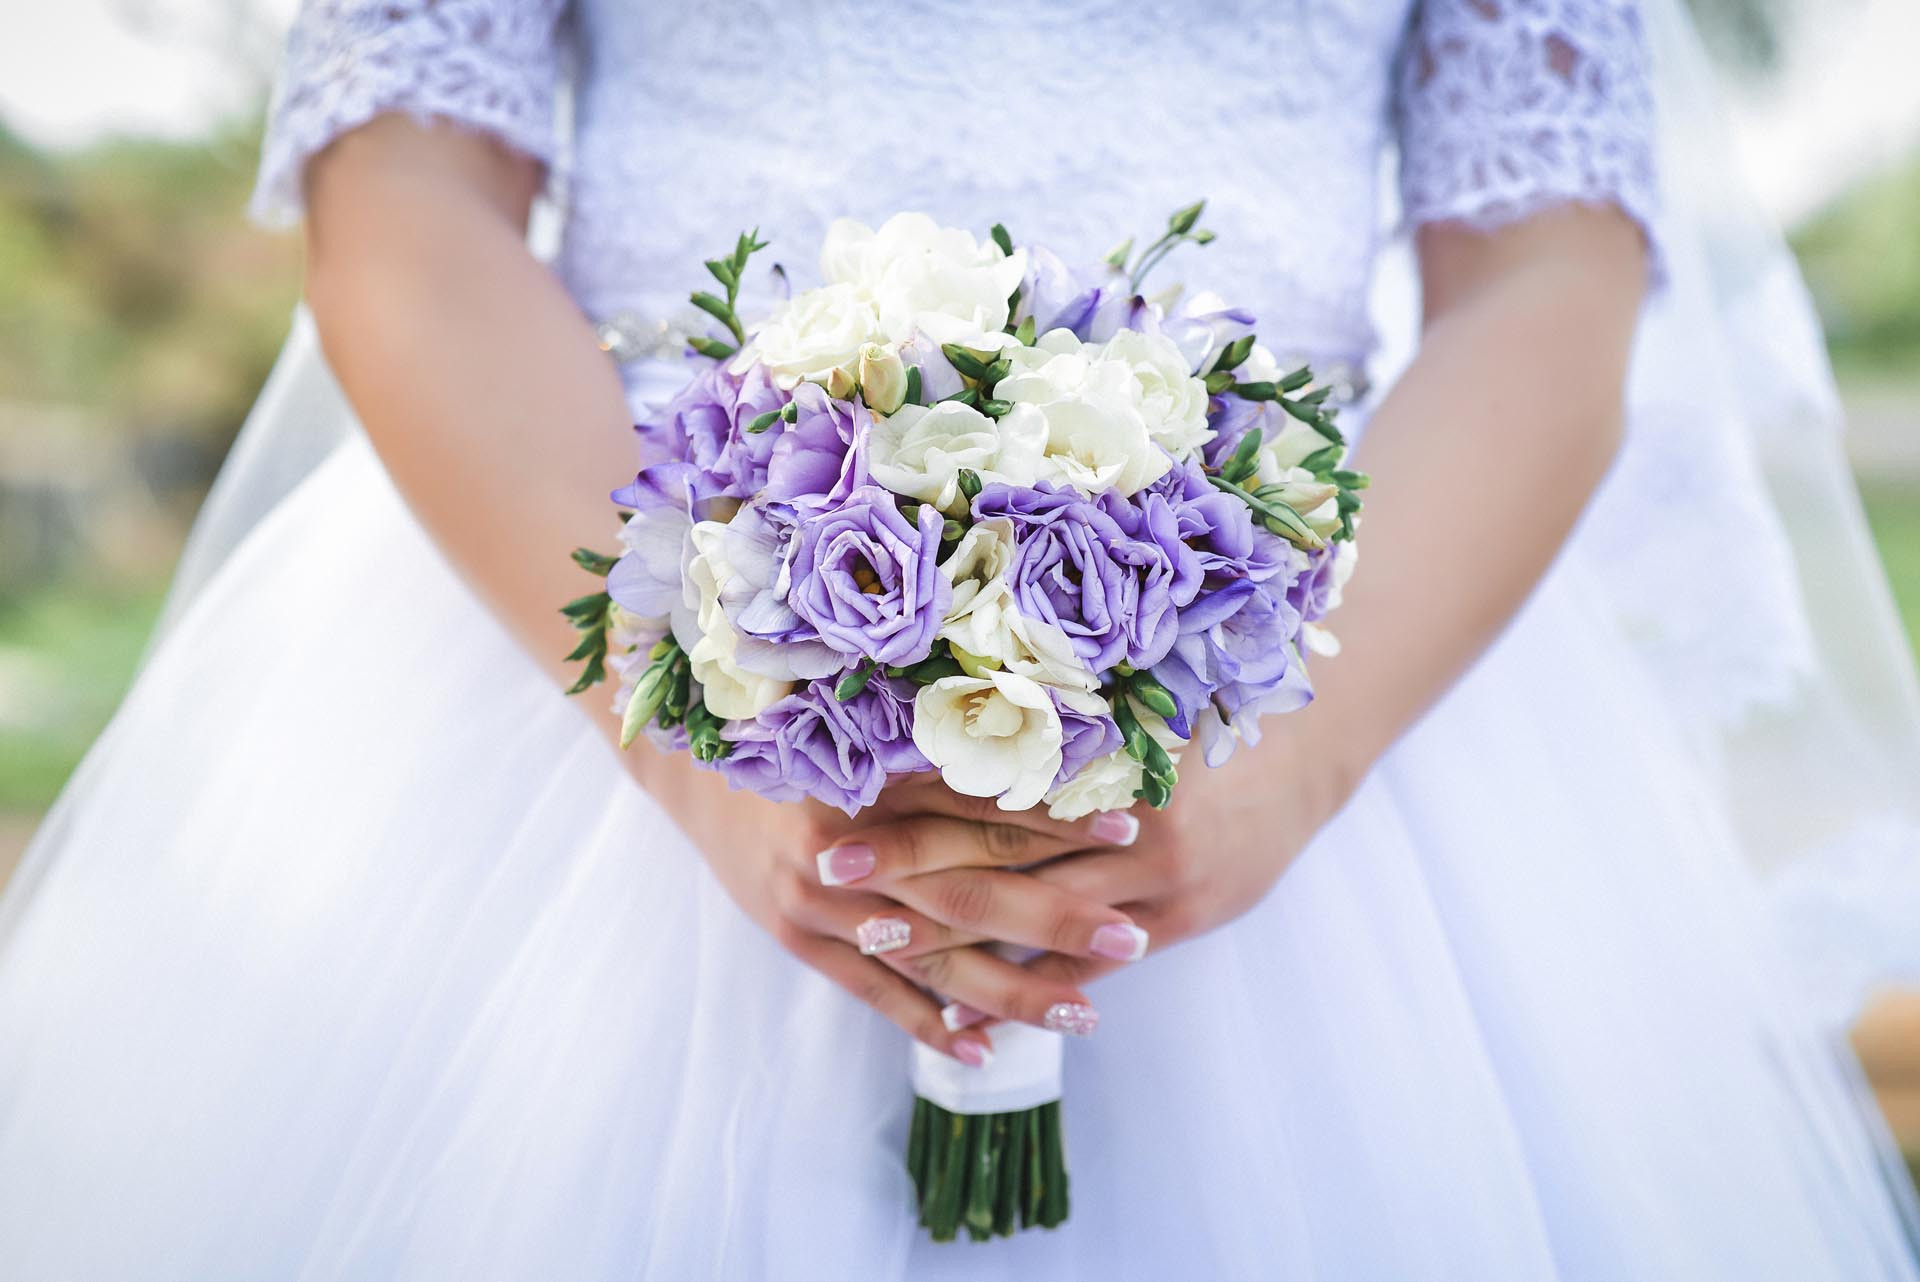 Brautstrauß Beispiele
 Brautstrauß in Lila und Weiß Heiraten mit braut